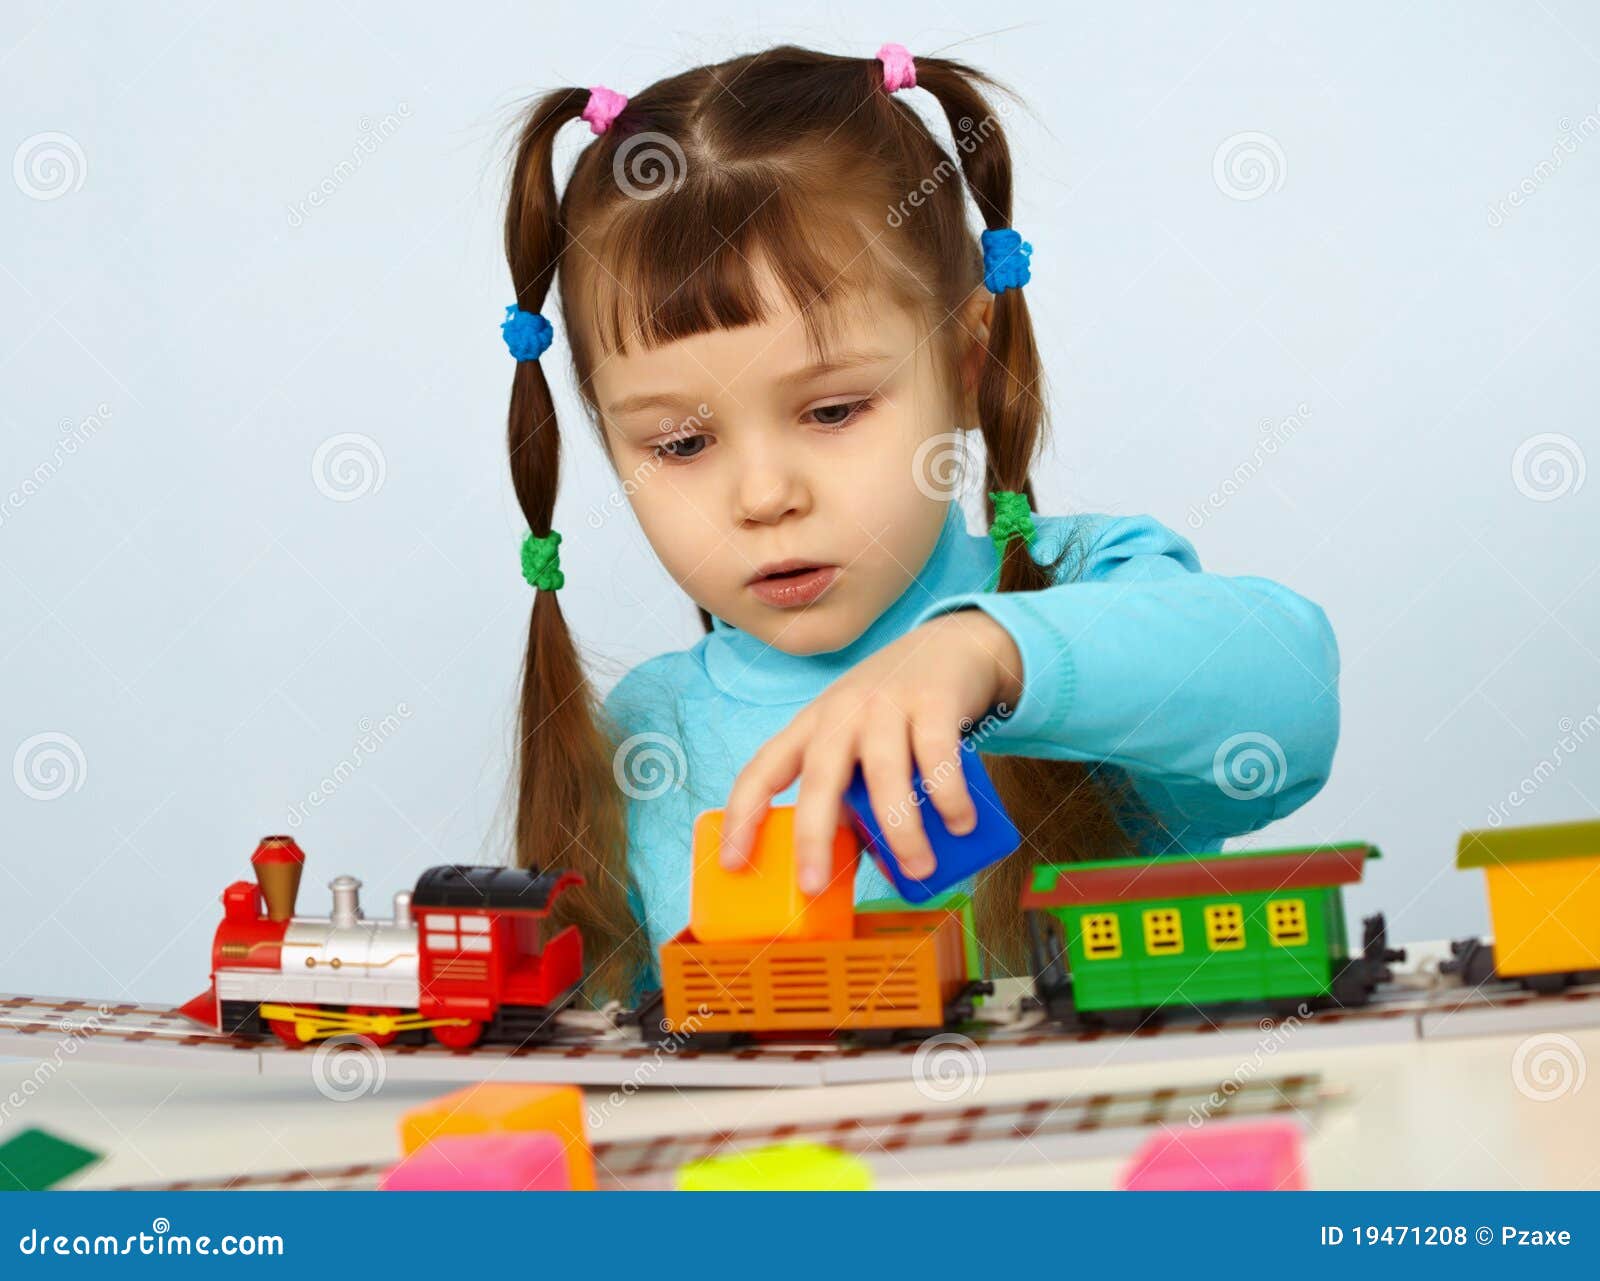 В машинки играем в куклы играем. Девочки играются машинками. Девочка играет в куклы. Дети играют в машинки. Мальчик с машинкой девочка с куклой.